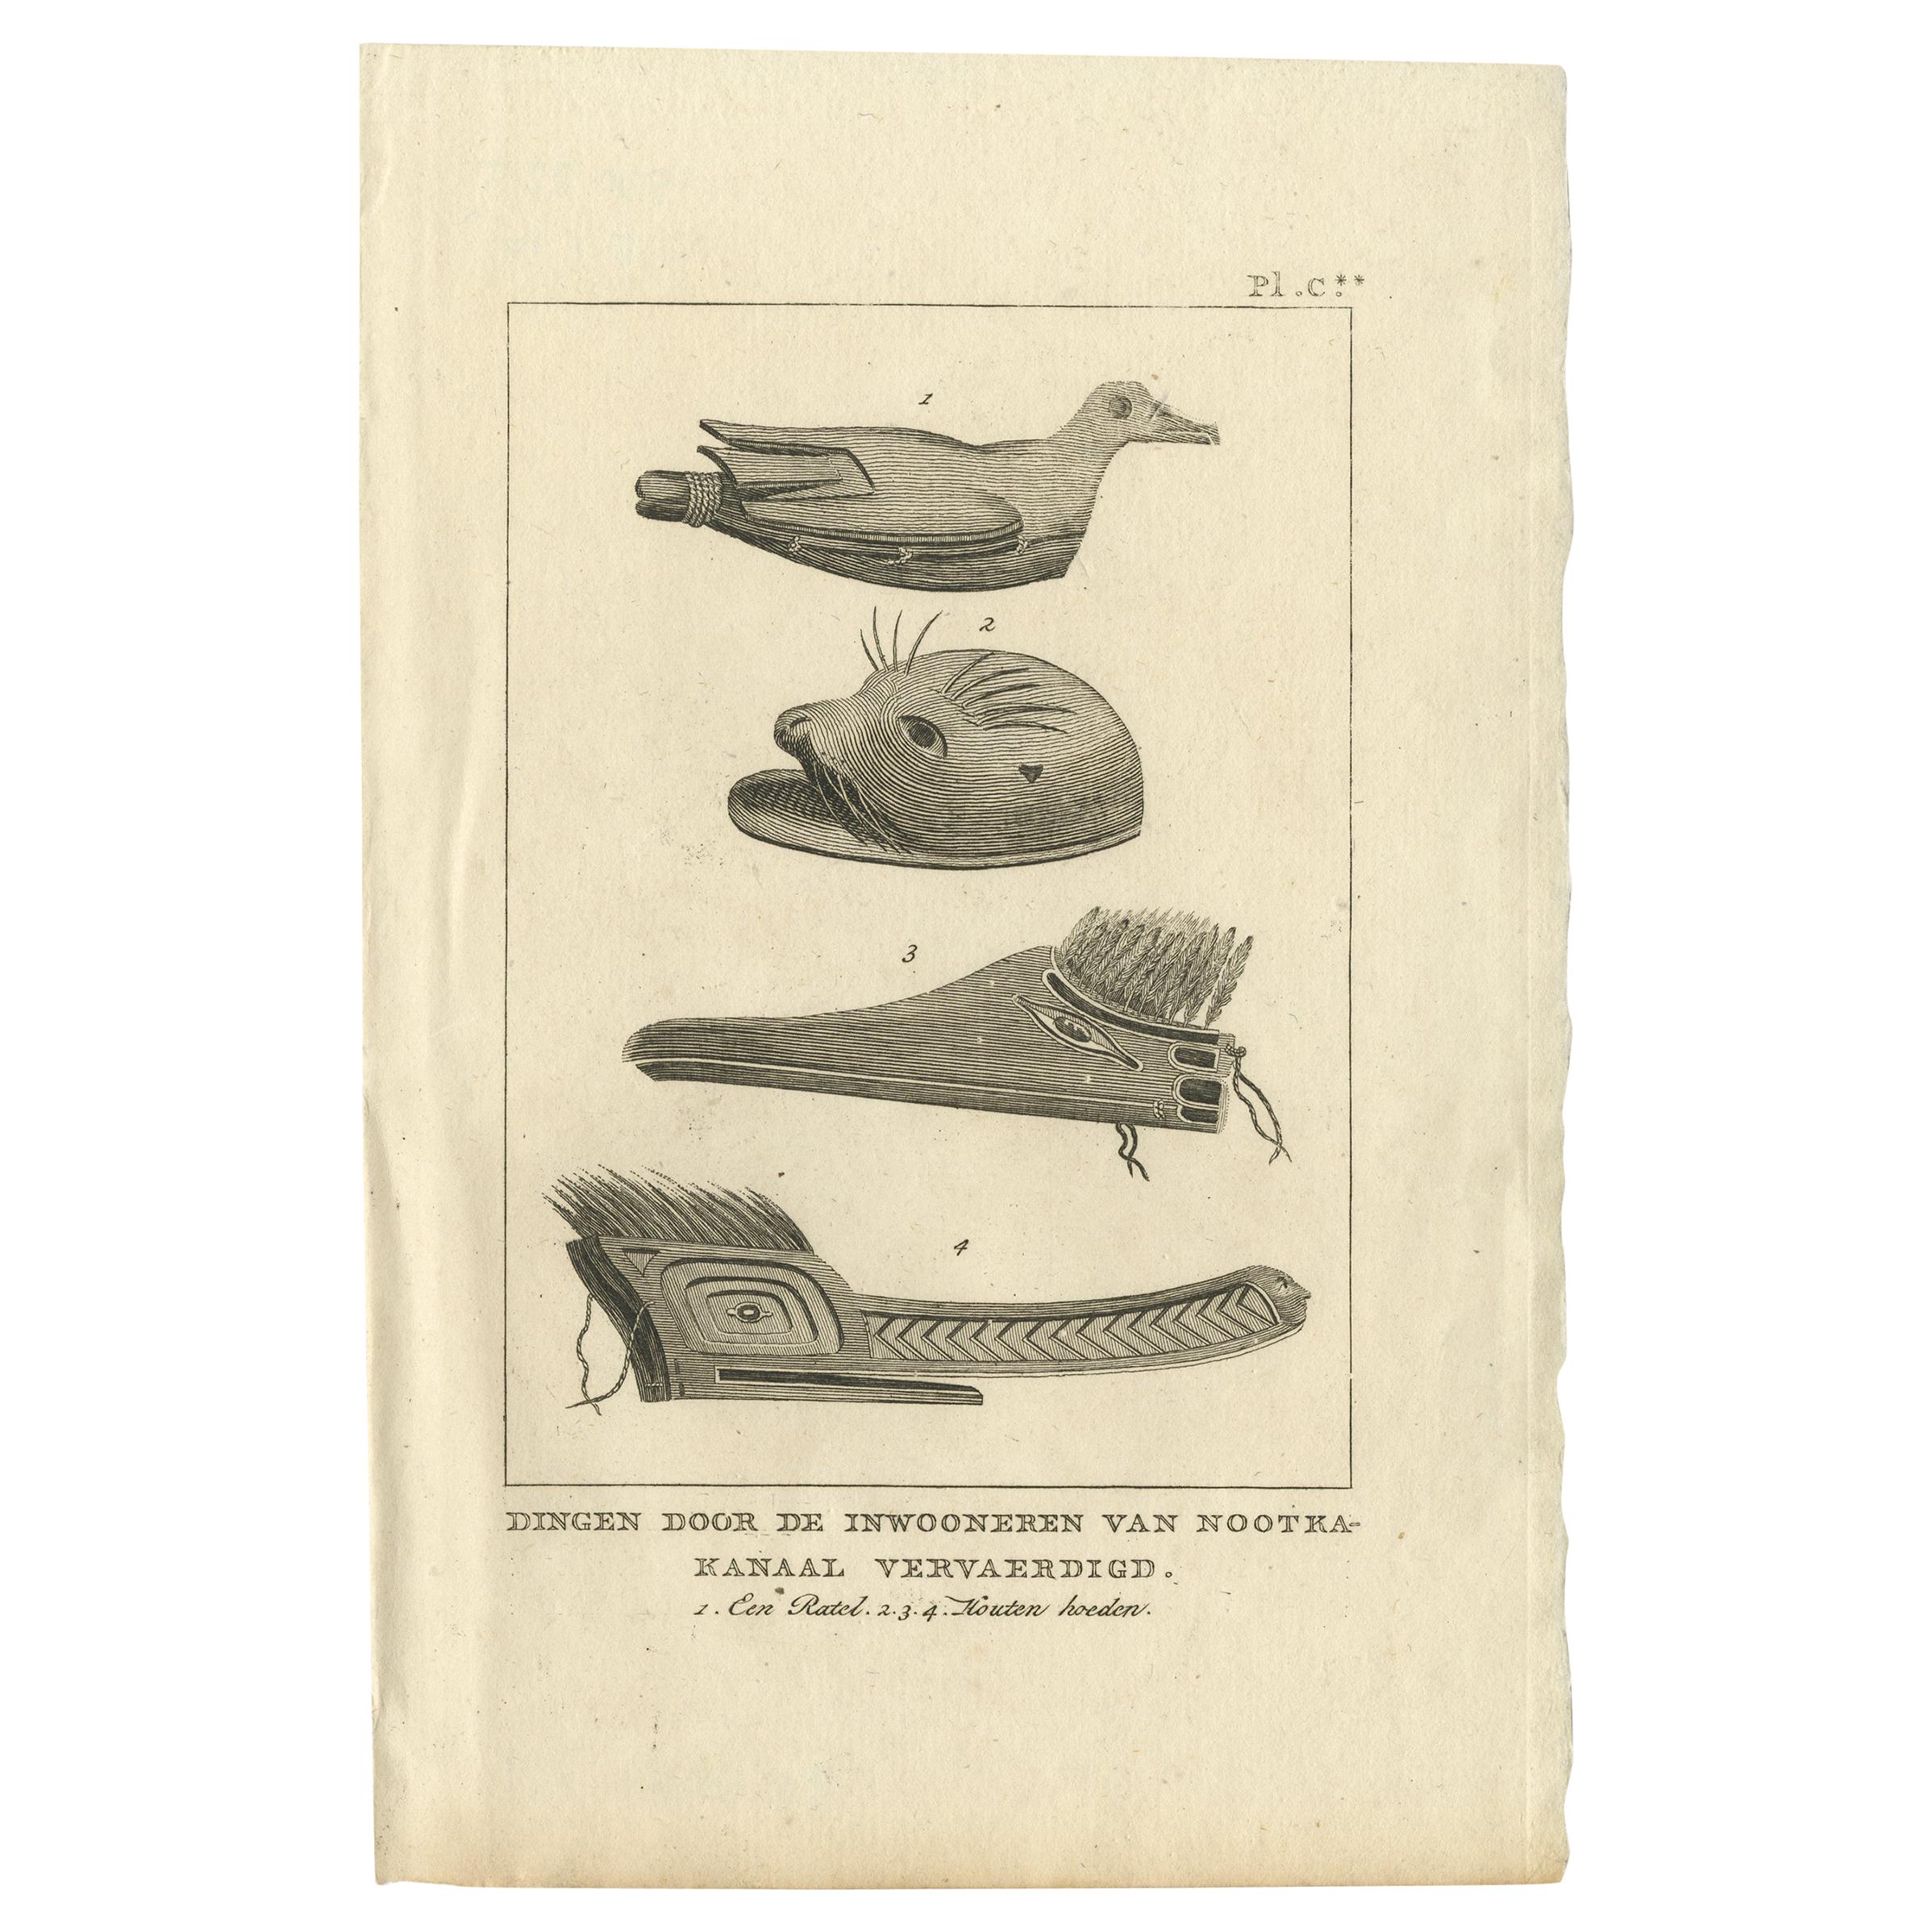 Antiker Druck mit verschiedenen Gegenständen, die von Nativen hergestellt wurden, von Cook, 1803